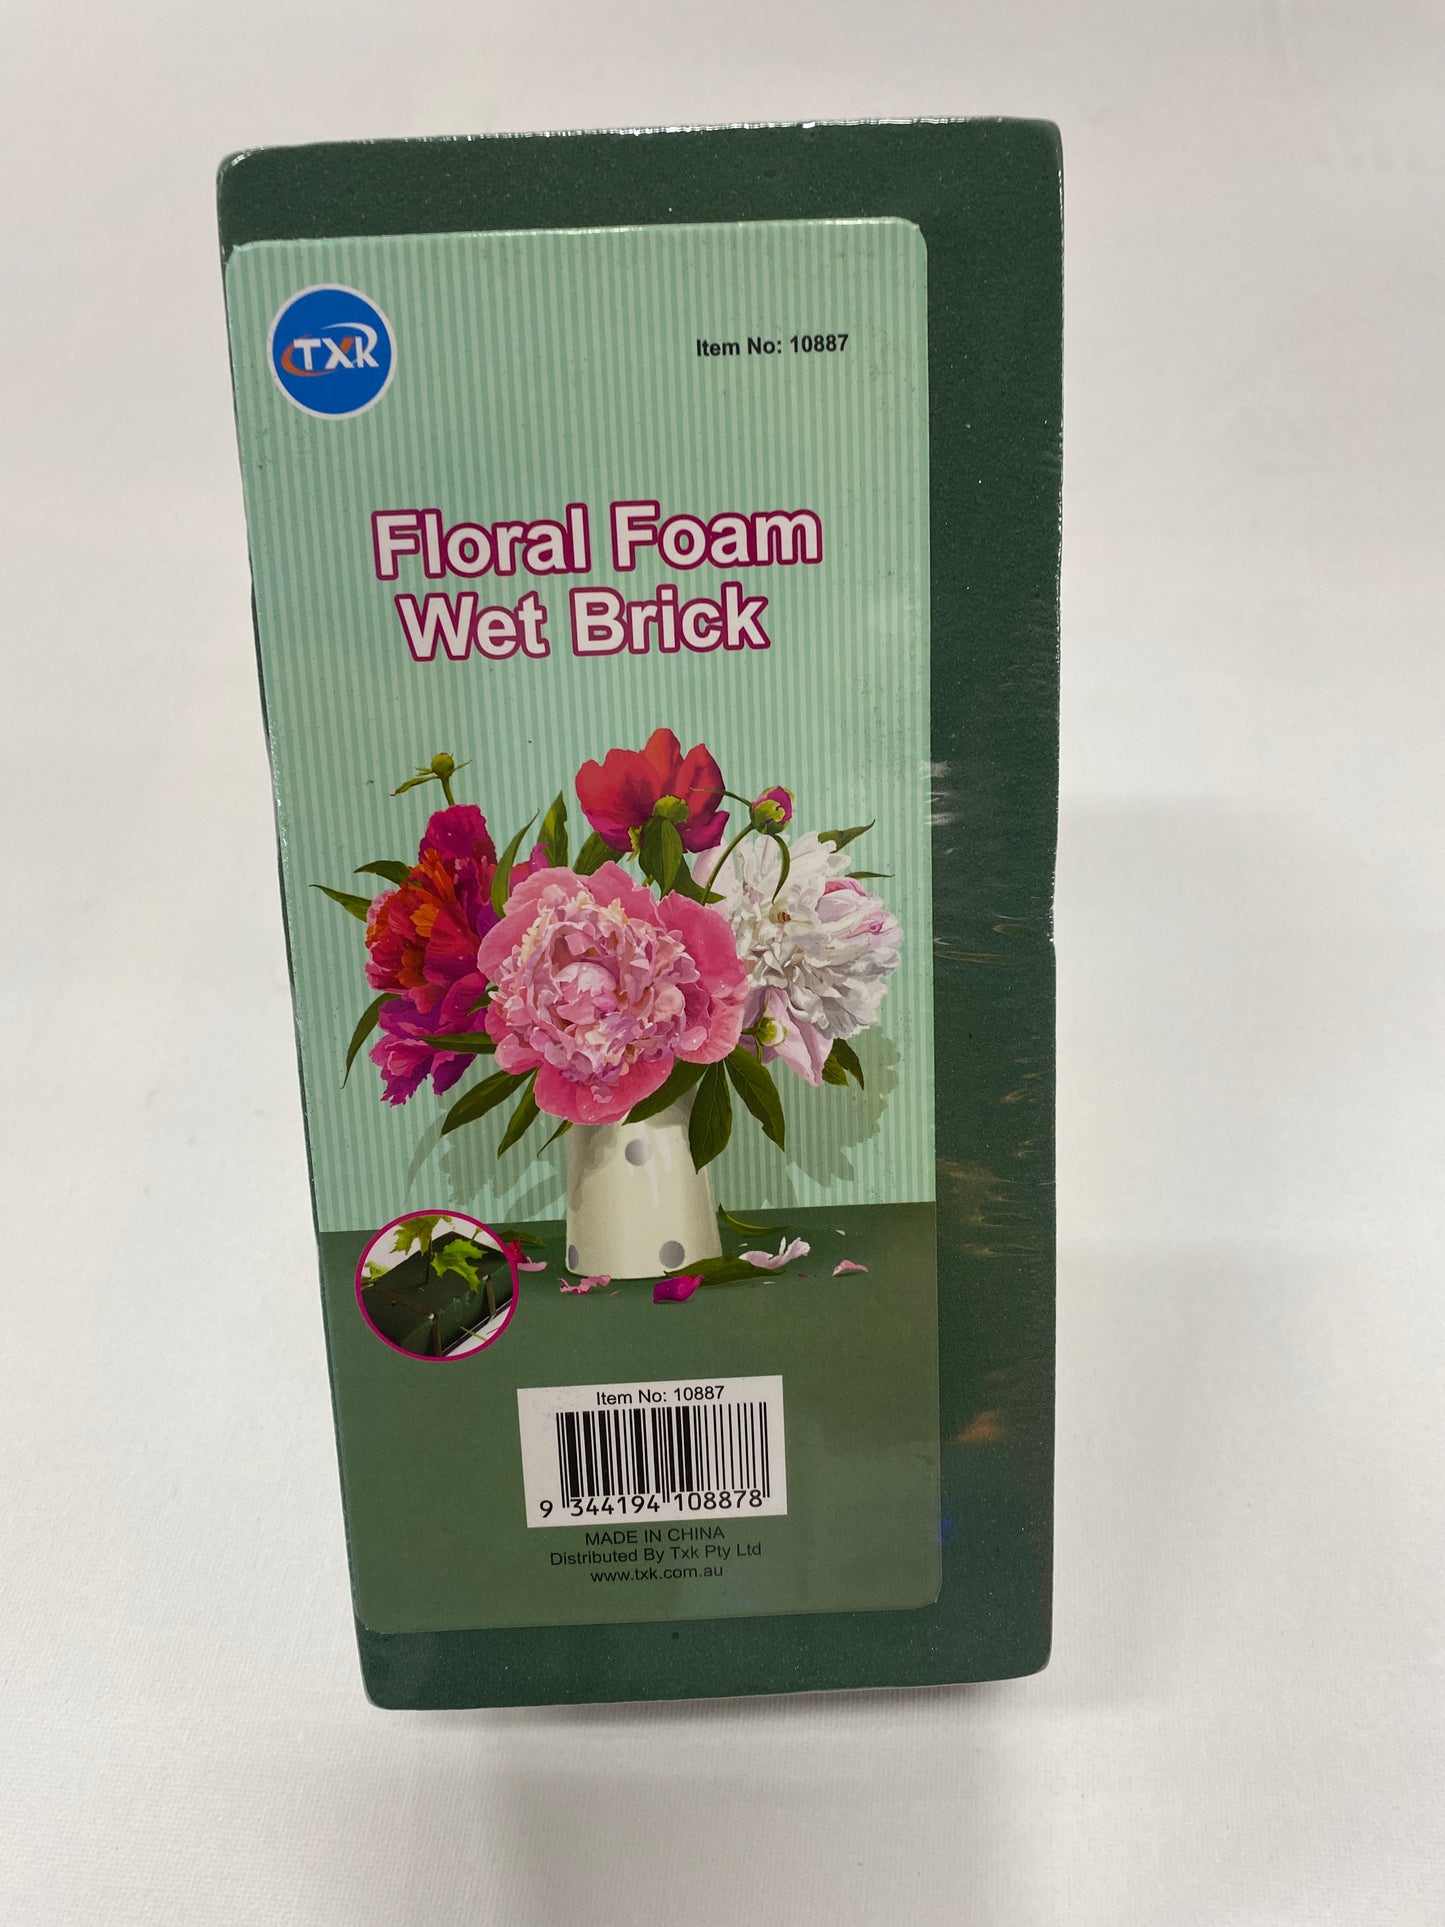 1pce Wet Floral Foam Brick -11x22x7cm. 10887